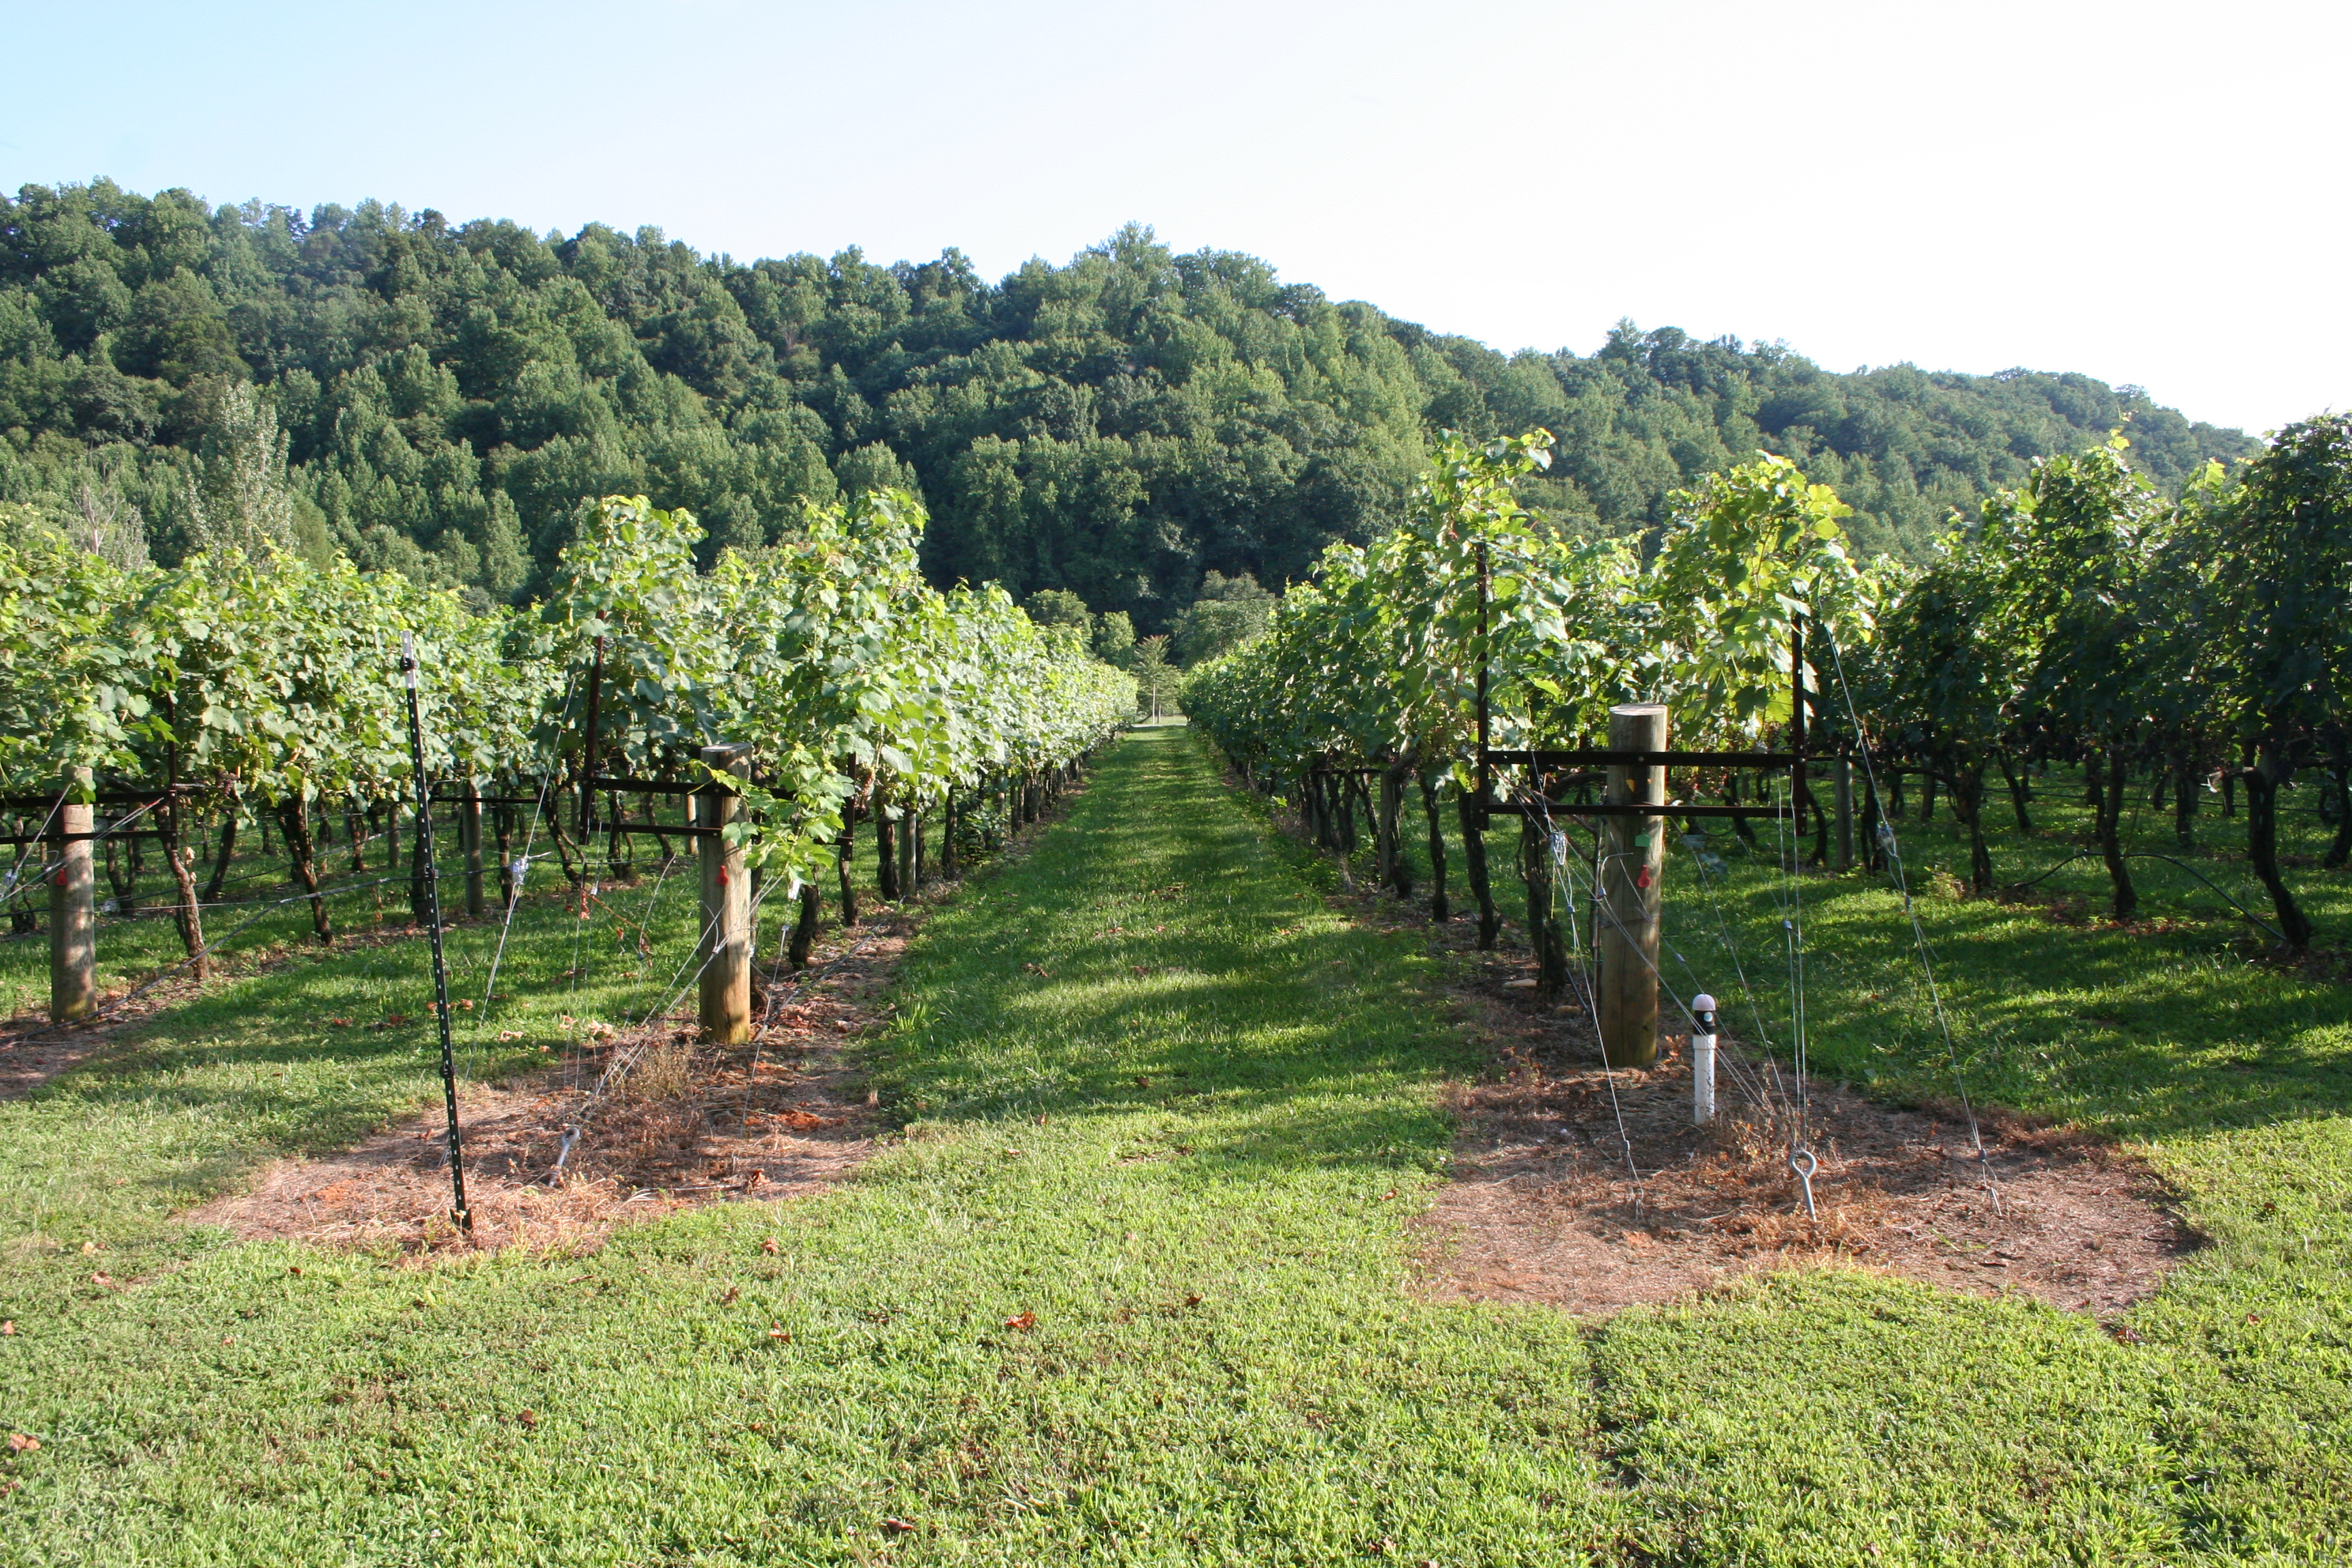 DuCard Vineyards grows seven varieties of grapes on 15 acres. (Photo: Mark Heckathorn/DC on Heels)